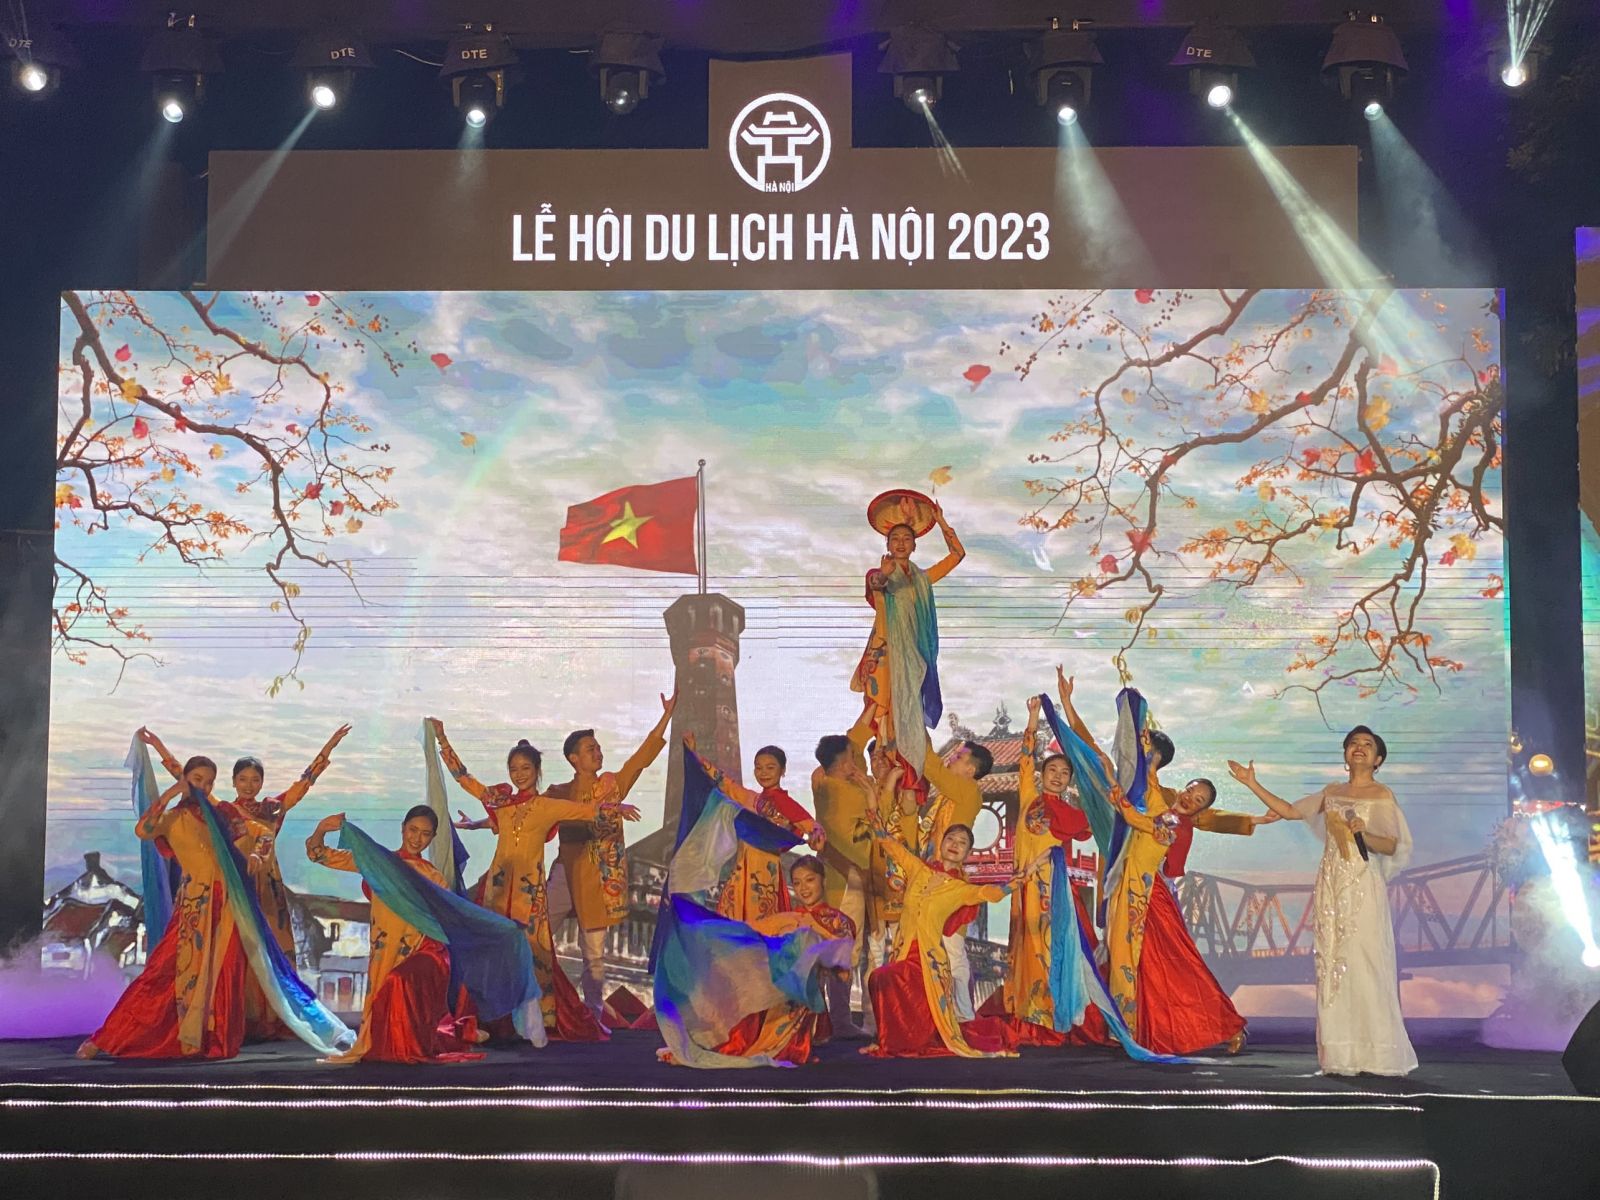 20 triệu lượt khách nội địa và 4 triệu lượt khách quốc tế là những con số ấn tượng mà du lịch Hà Nội đã đạt được trong năm 2023.